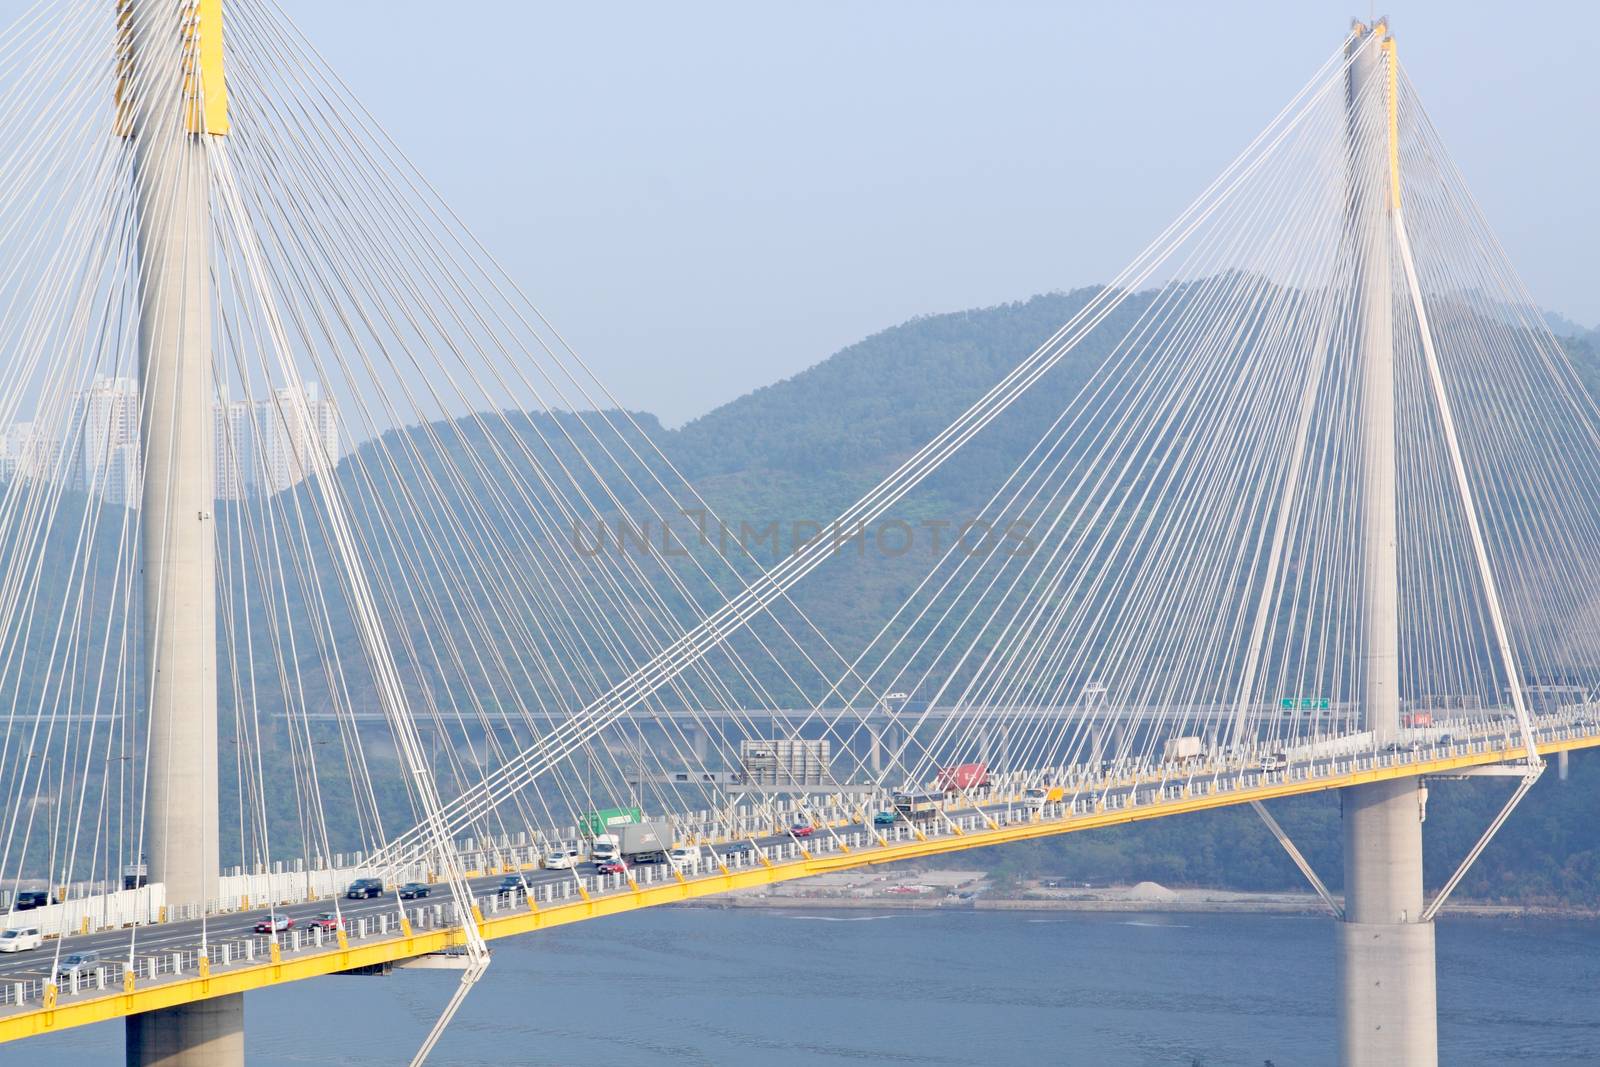 Ting Kau Bridge at day